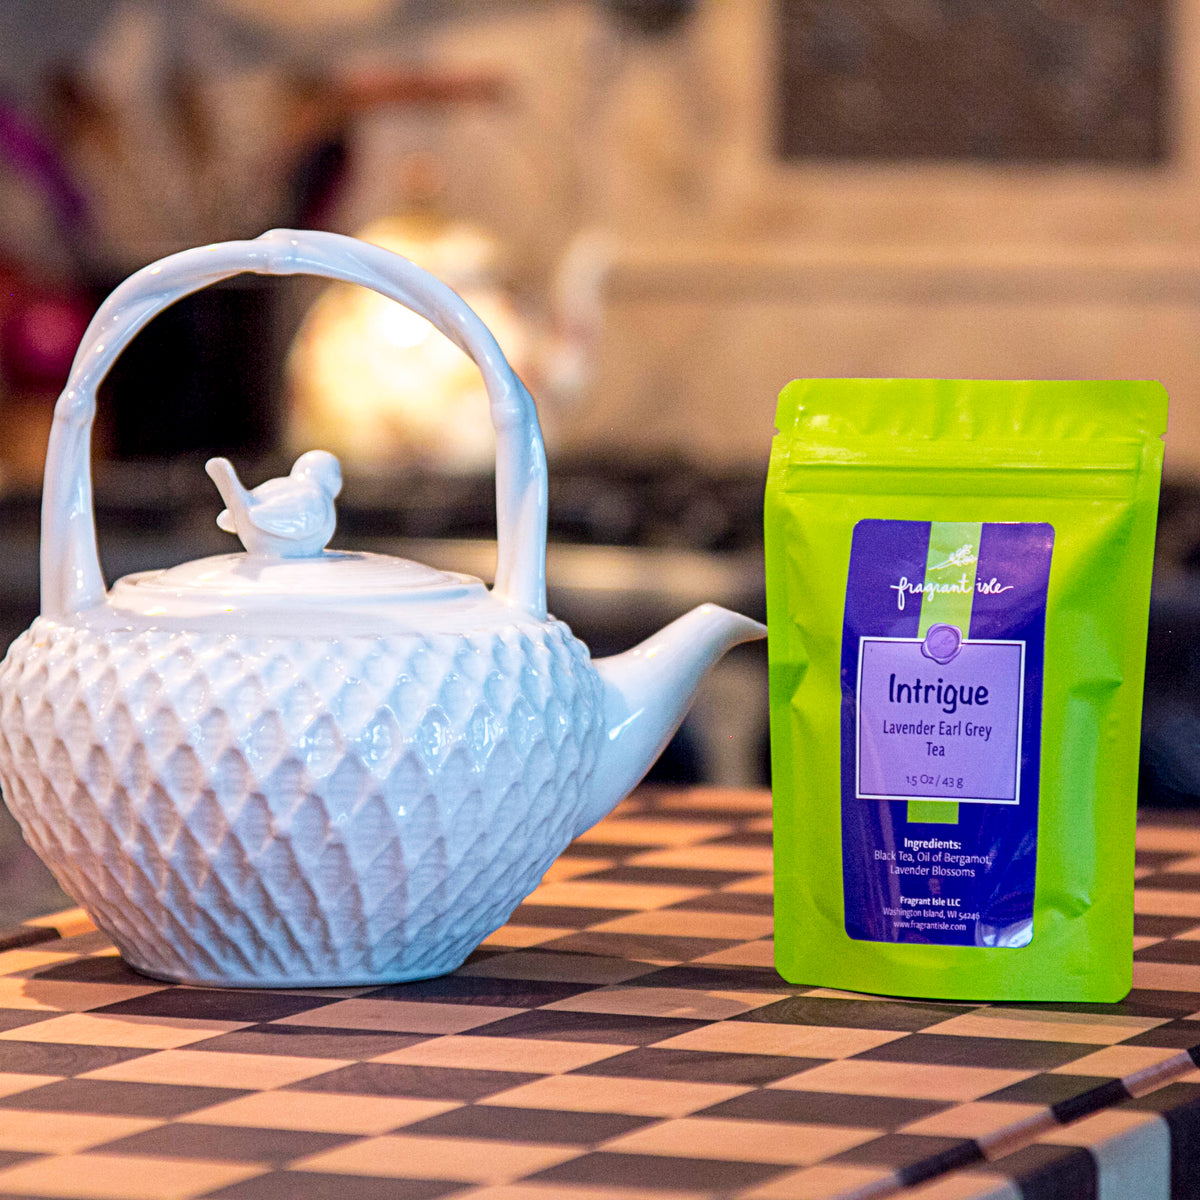 Intrigue Tea - 1.5 oz